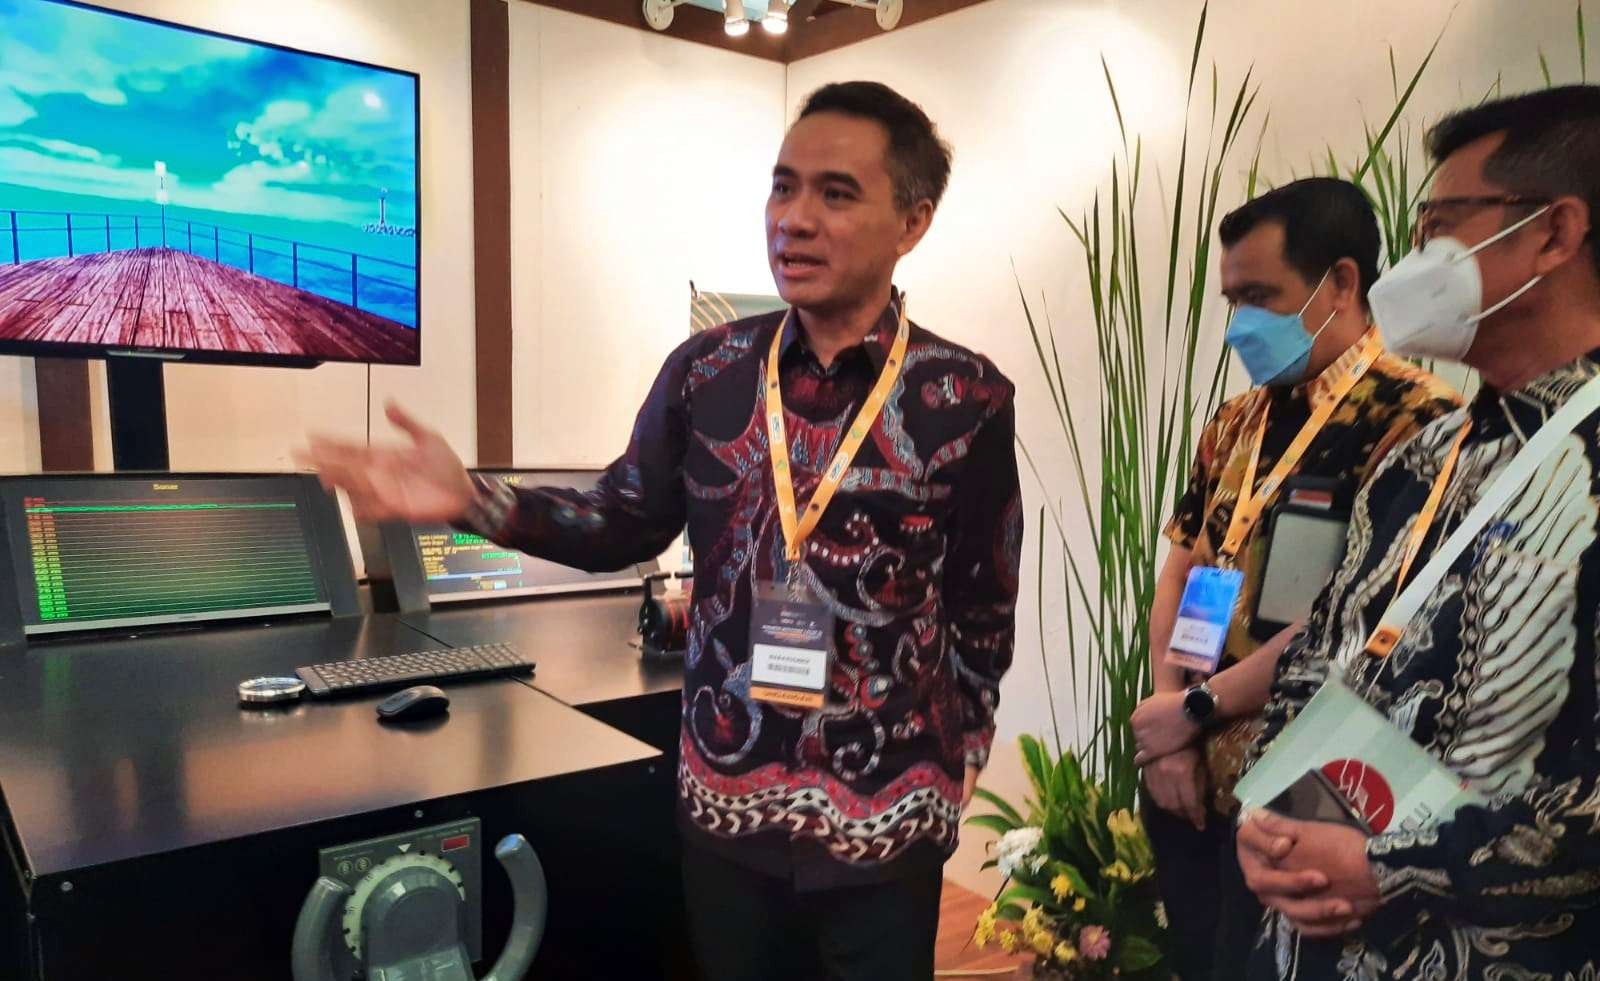 Direktur Jenderal Pendidikan Vokasi, Wikan Sakarinto menjelaskan keunggulan Ship Simulator karya siswa SMK. (Foto: Istimewa)